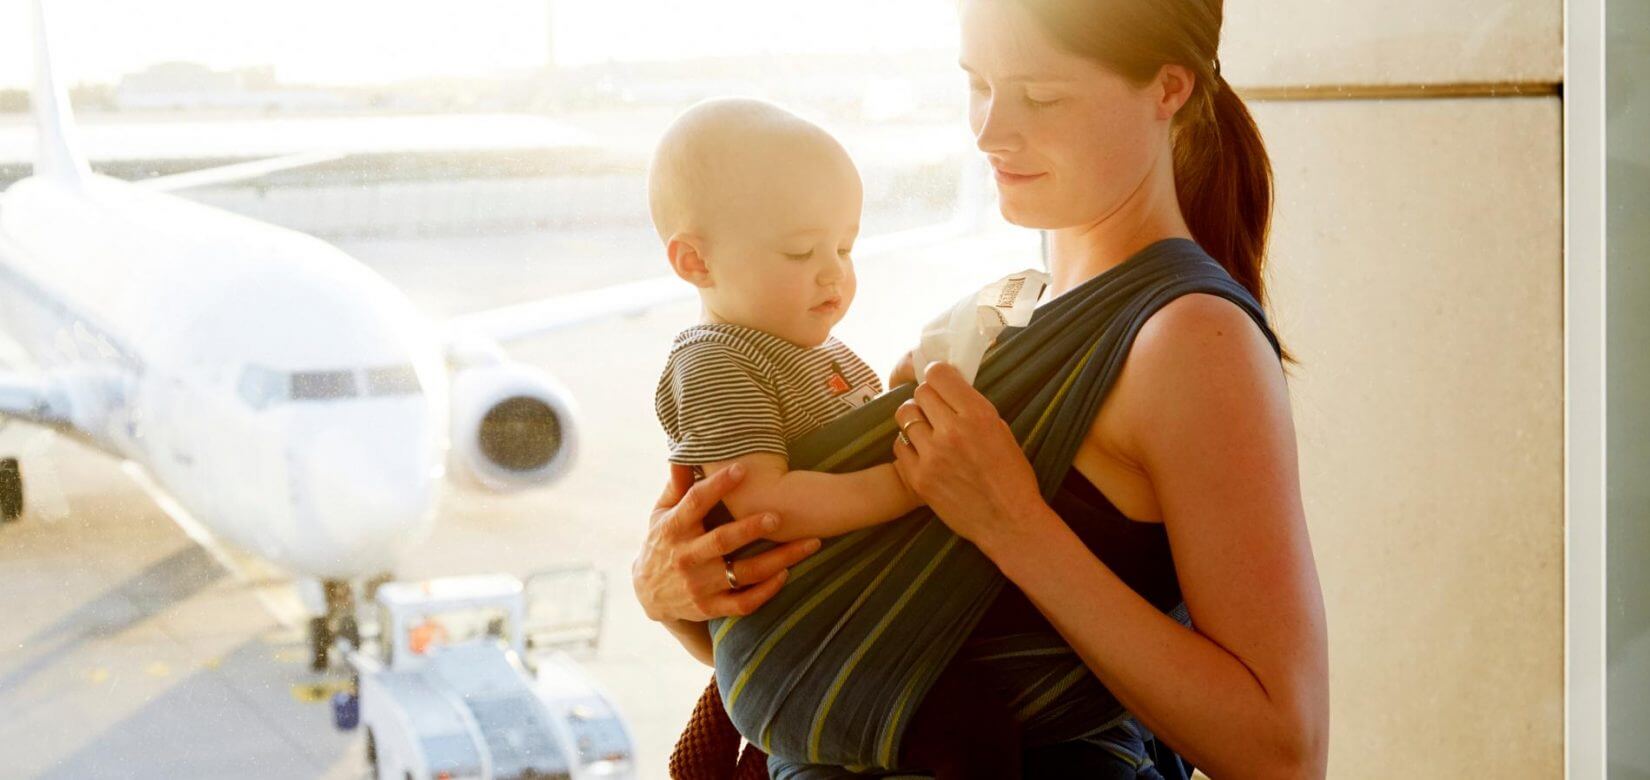 Μωρό στο αεροπλάνο: Πώς να κάνετε το ταξίδι σας ευκολότερο !